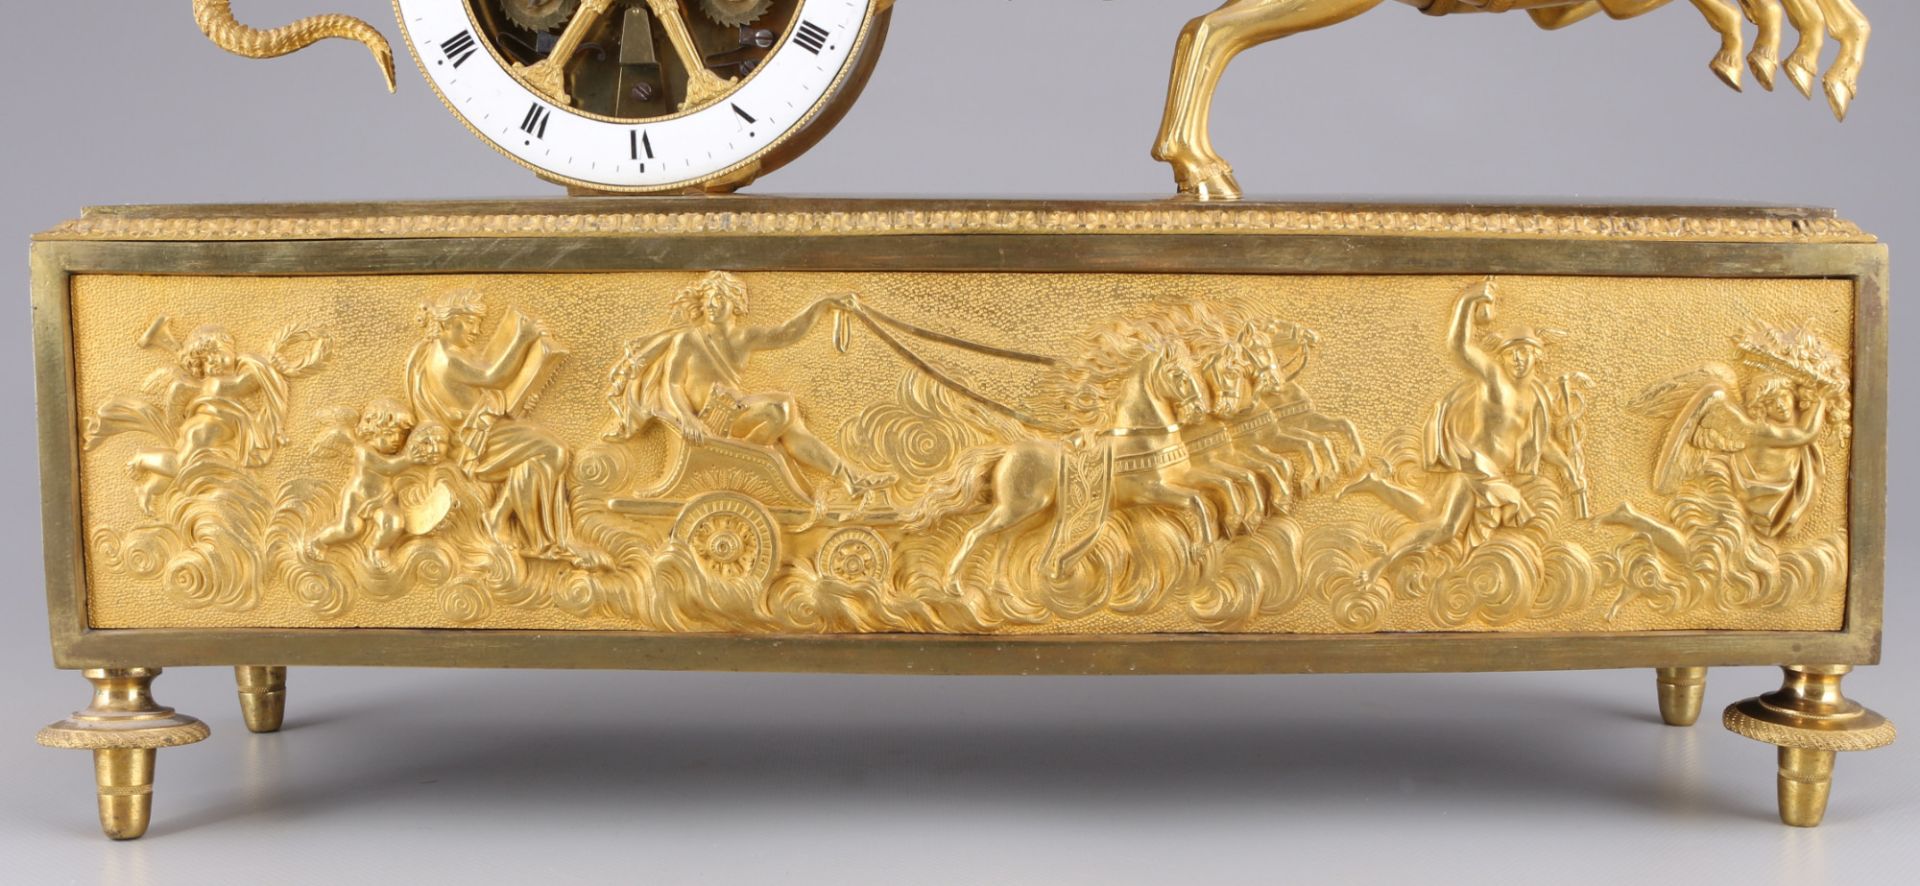 Empire mantel clock Au char de l'Amour, France 19th century, - Image 5 of 9